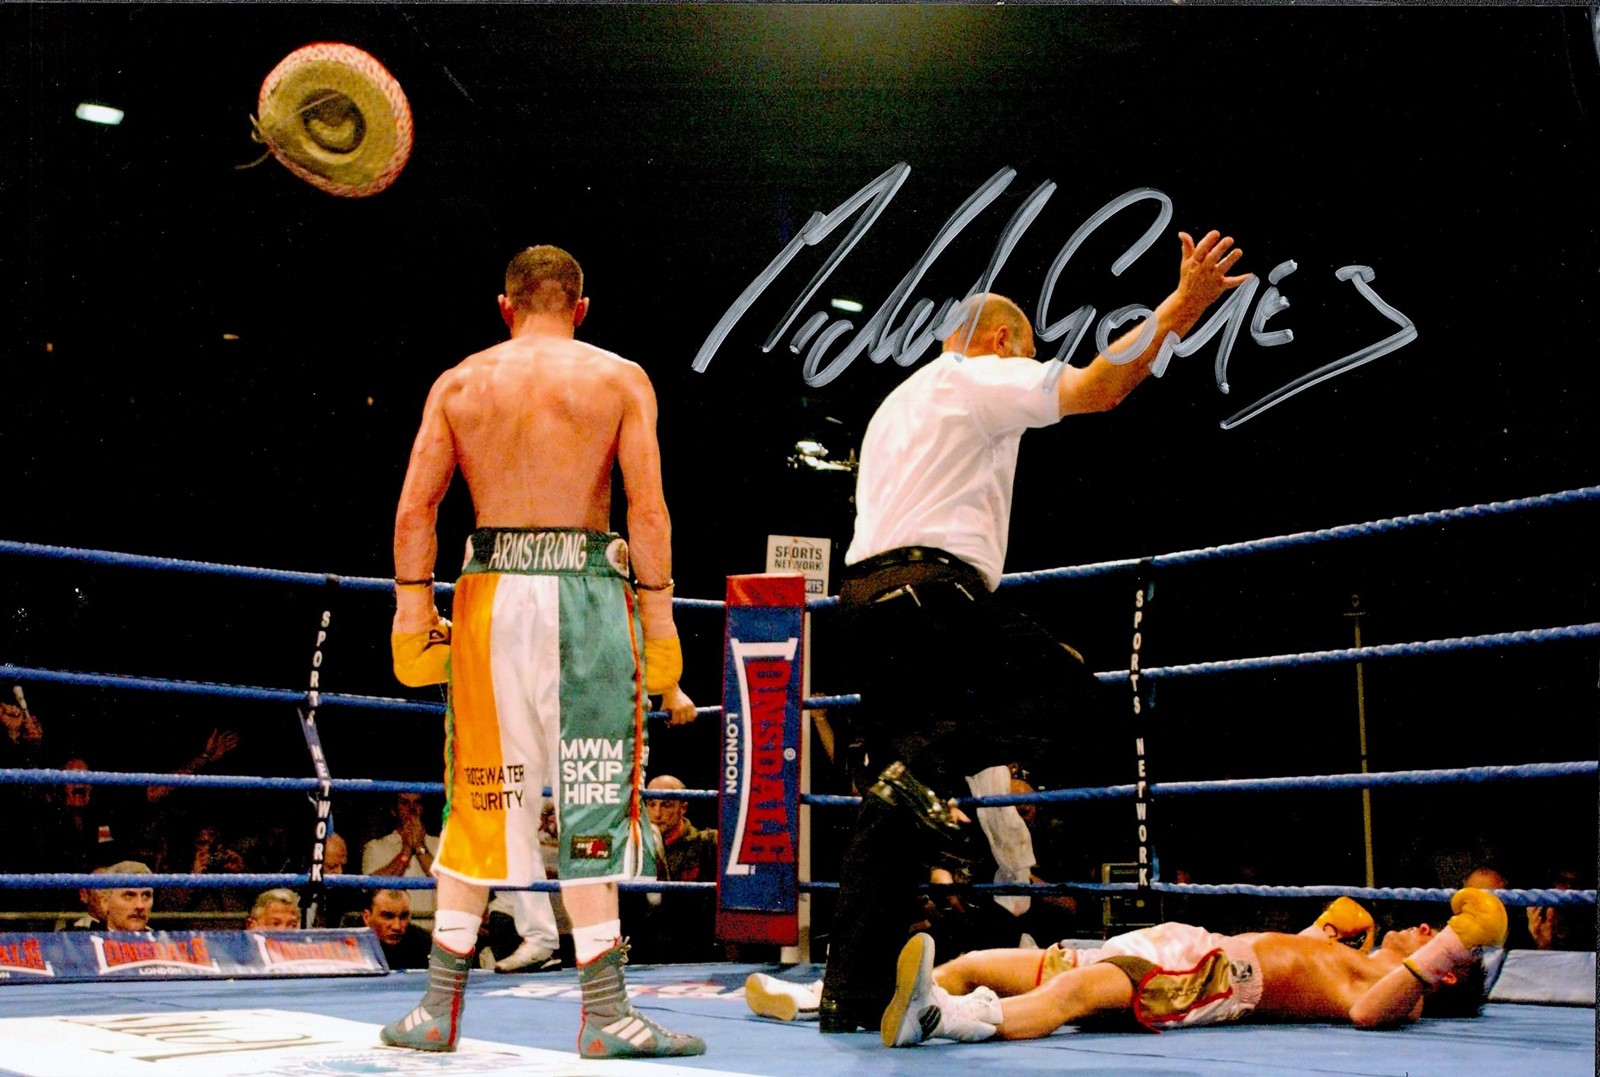 Boxing Michael Gomez signed 12x8 colour photo. Michael Gomez (born Michael Armstrong; 21 June